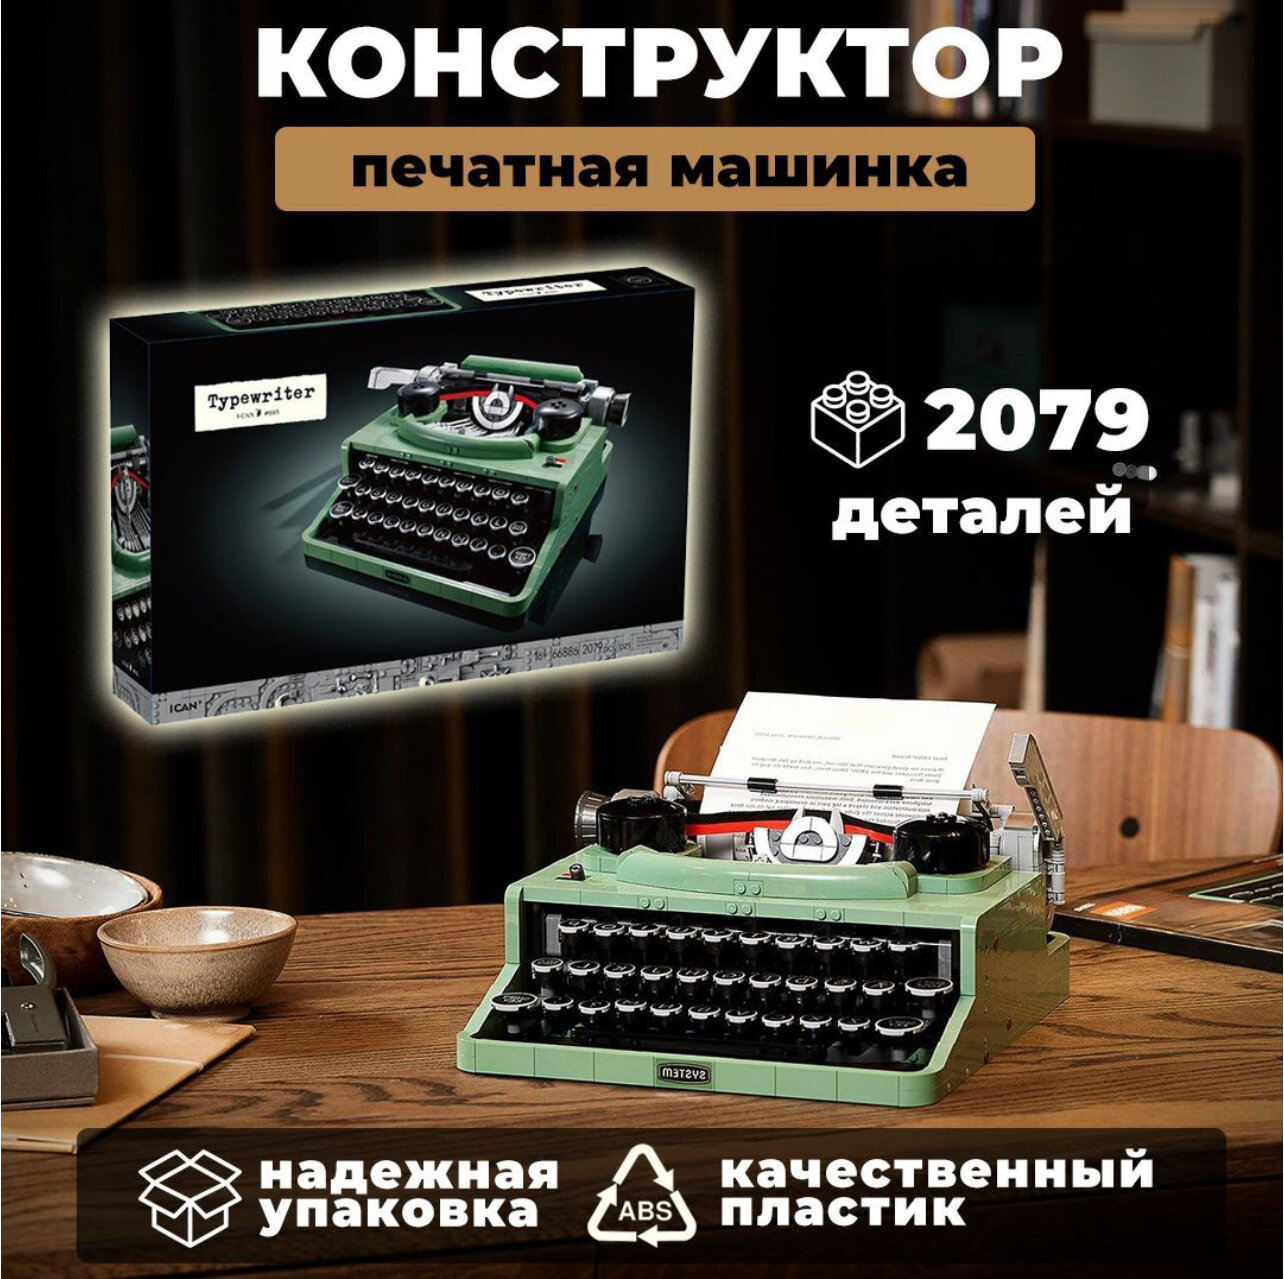 Конструктор Creator Печатная машинка 2079 деталей